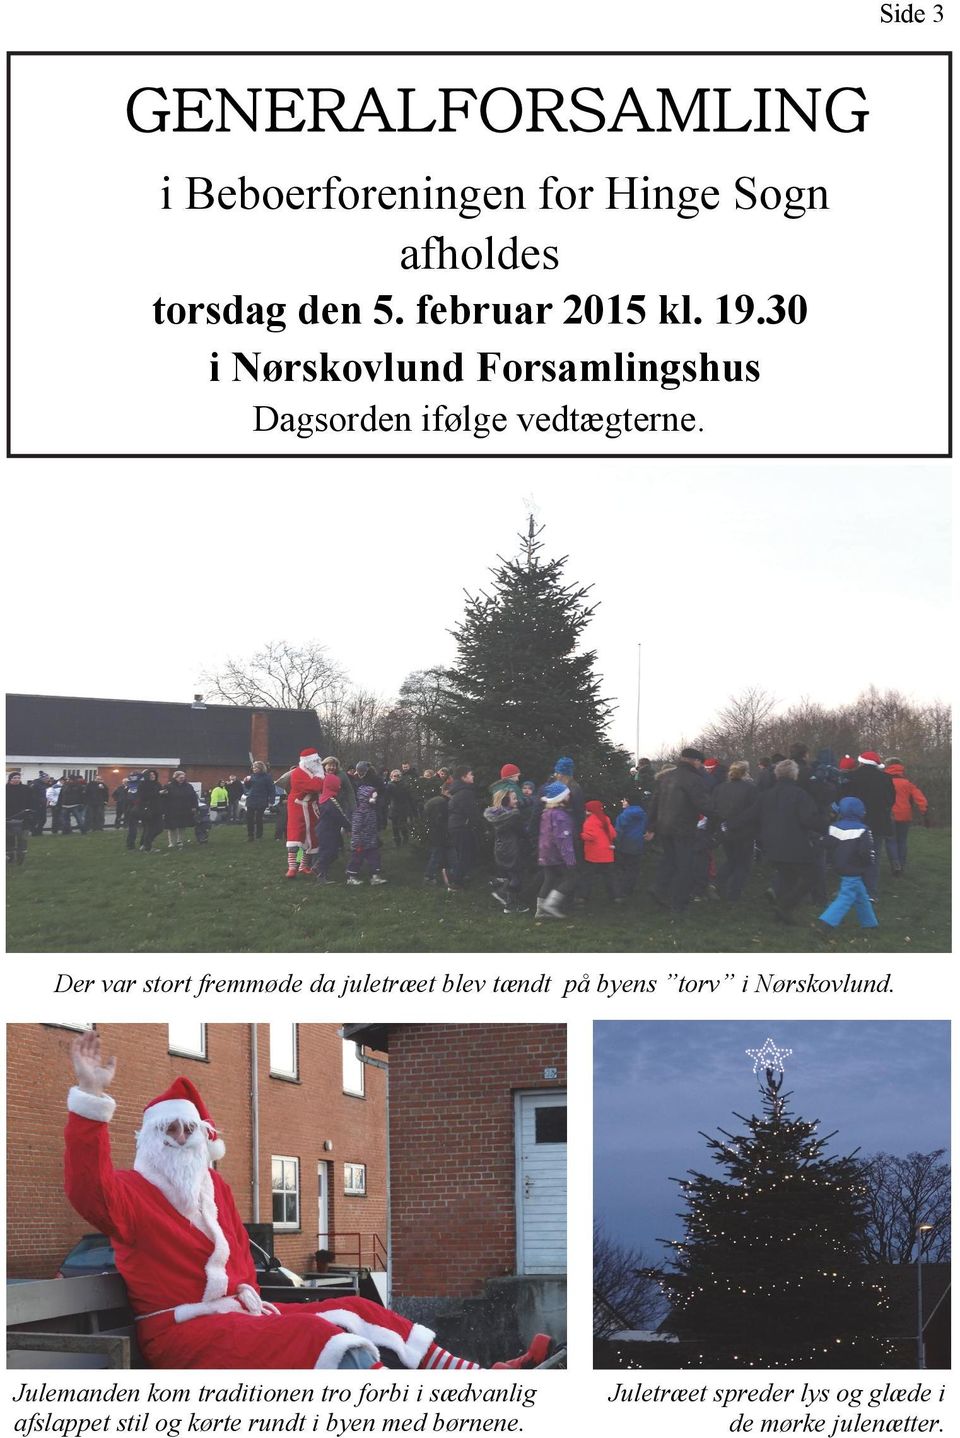 Der var stort fremmøde da juletræet blev tændt på byens torv i Nørskovlund.